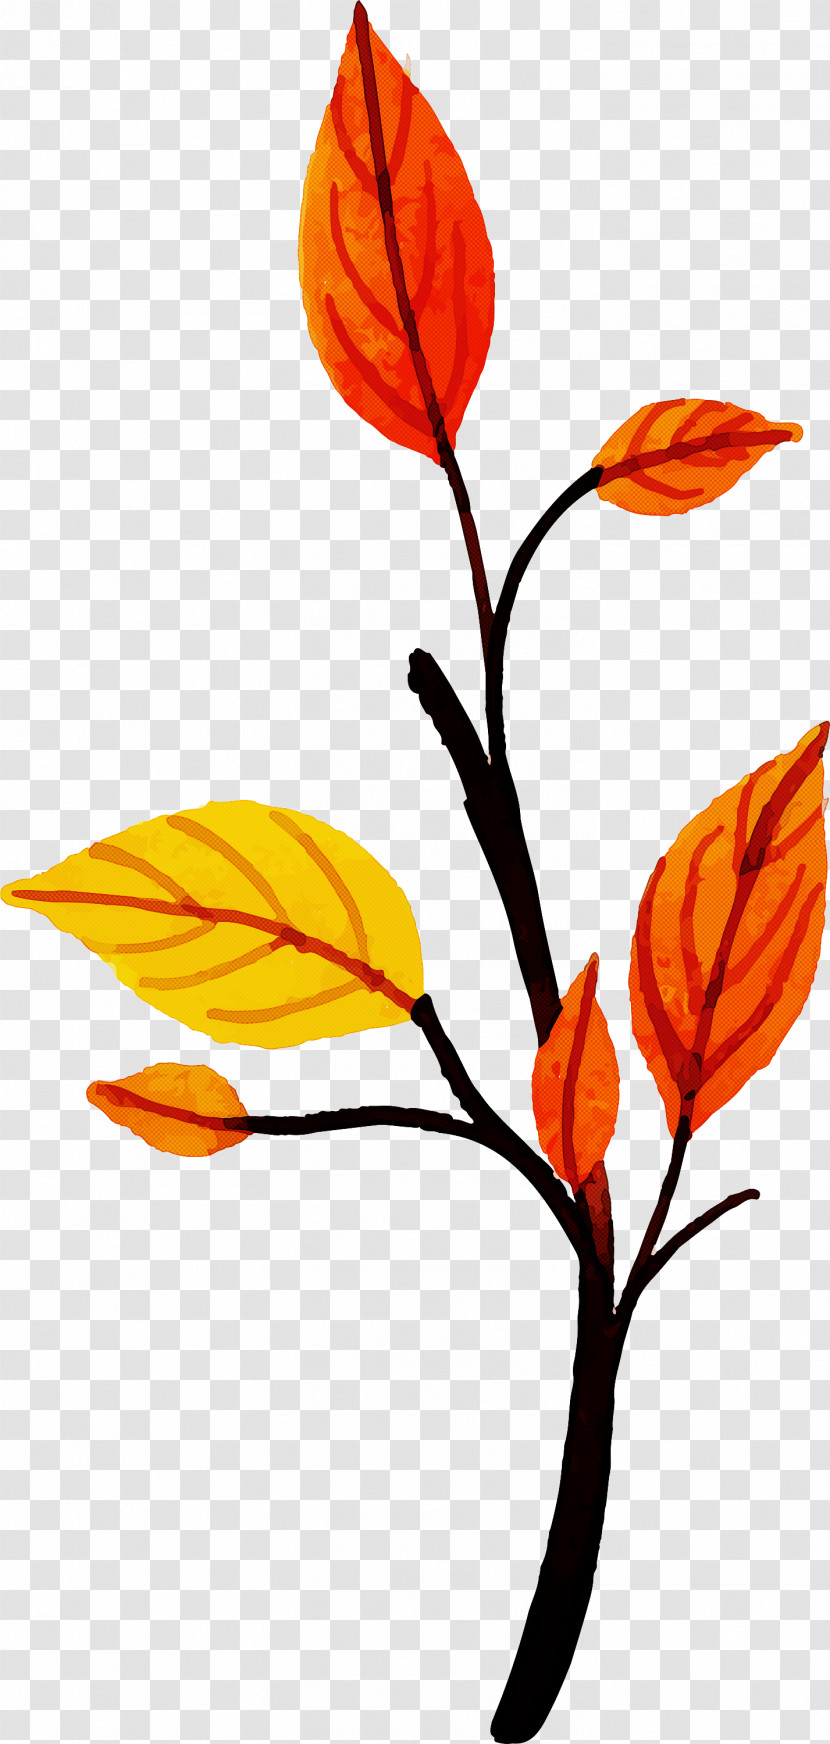 Autumn Leaf Colorful Leaf Transparent PNG